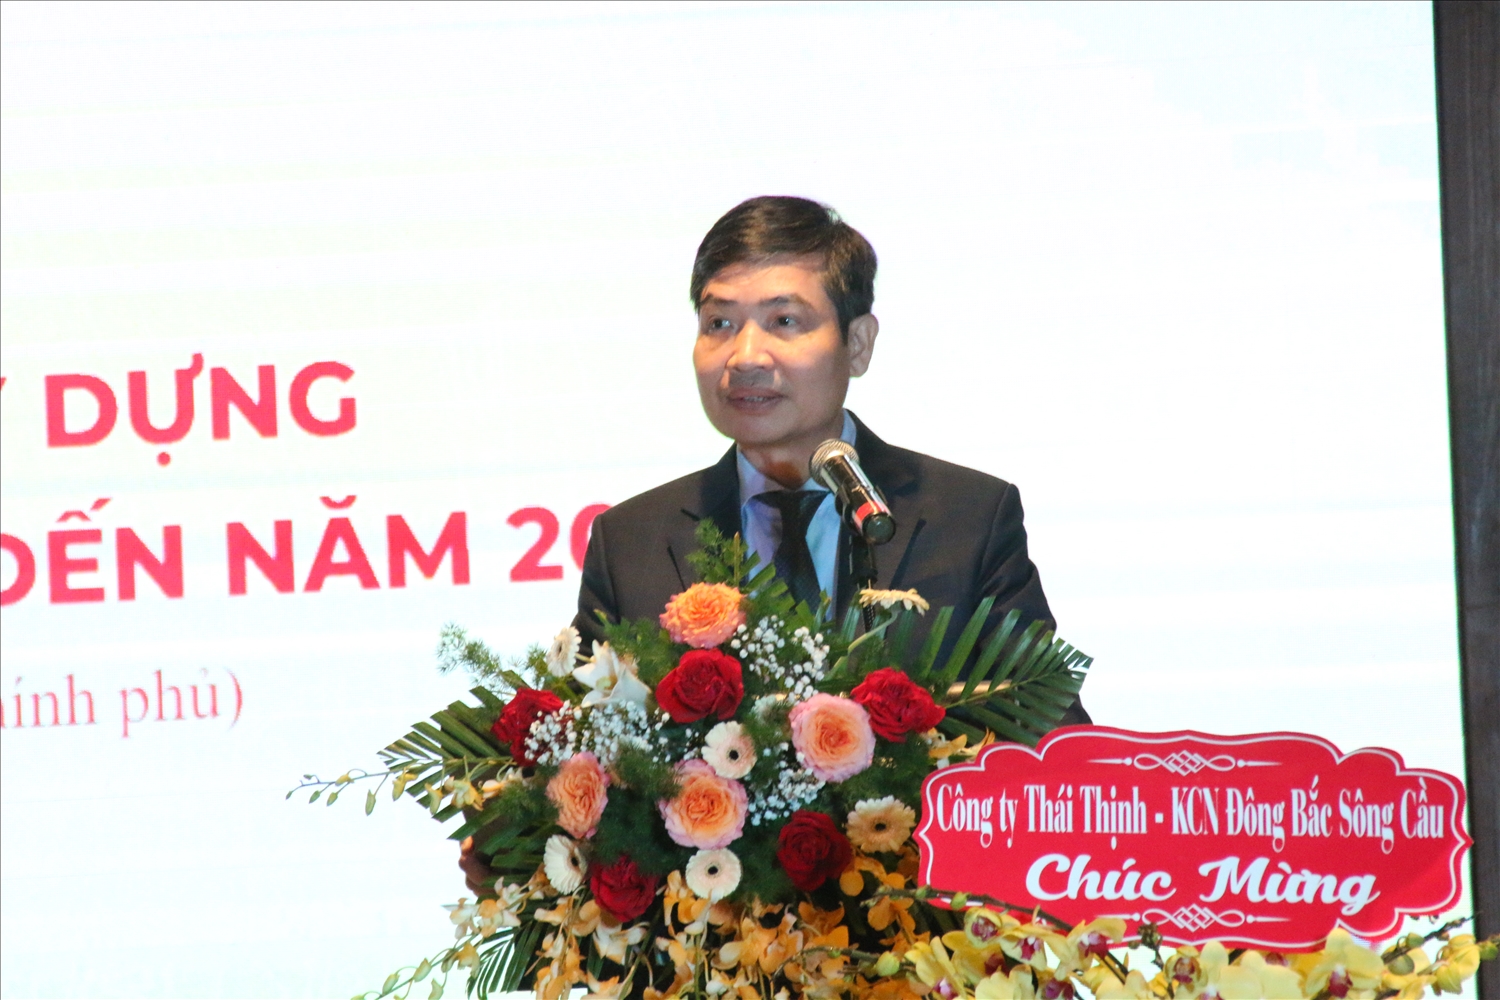 Ông Tạ Anh Tuấn, CHủ tịch UBND tỉnh Phú Yên phát biểu tại buổi lễ công bố